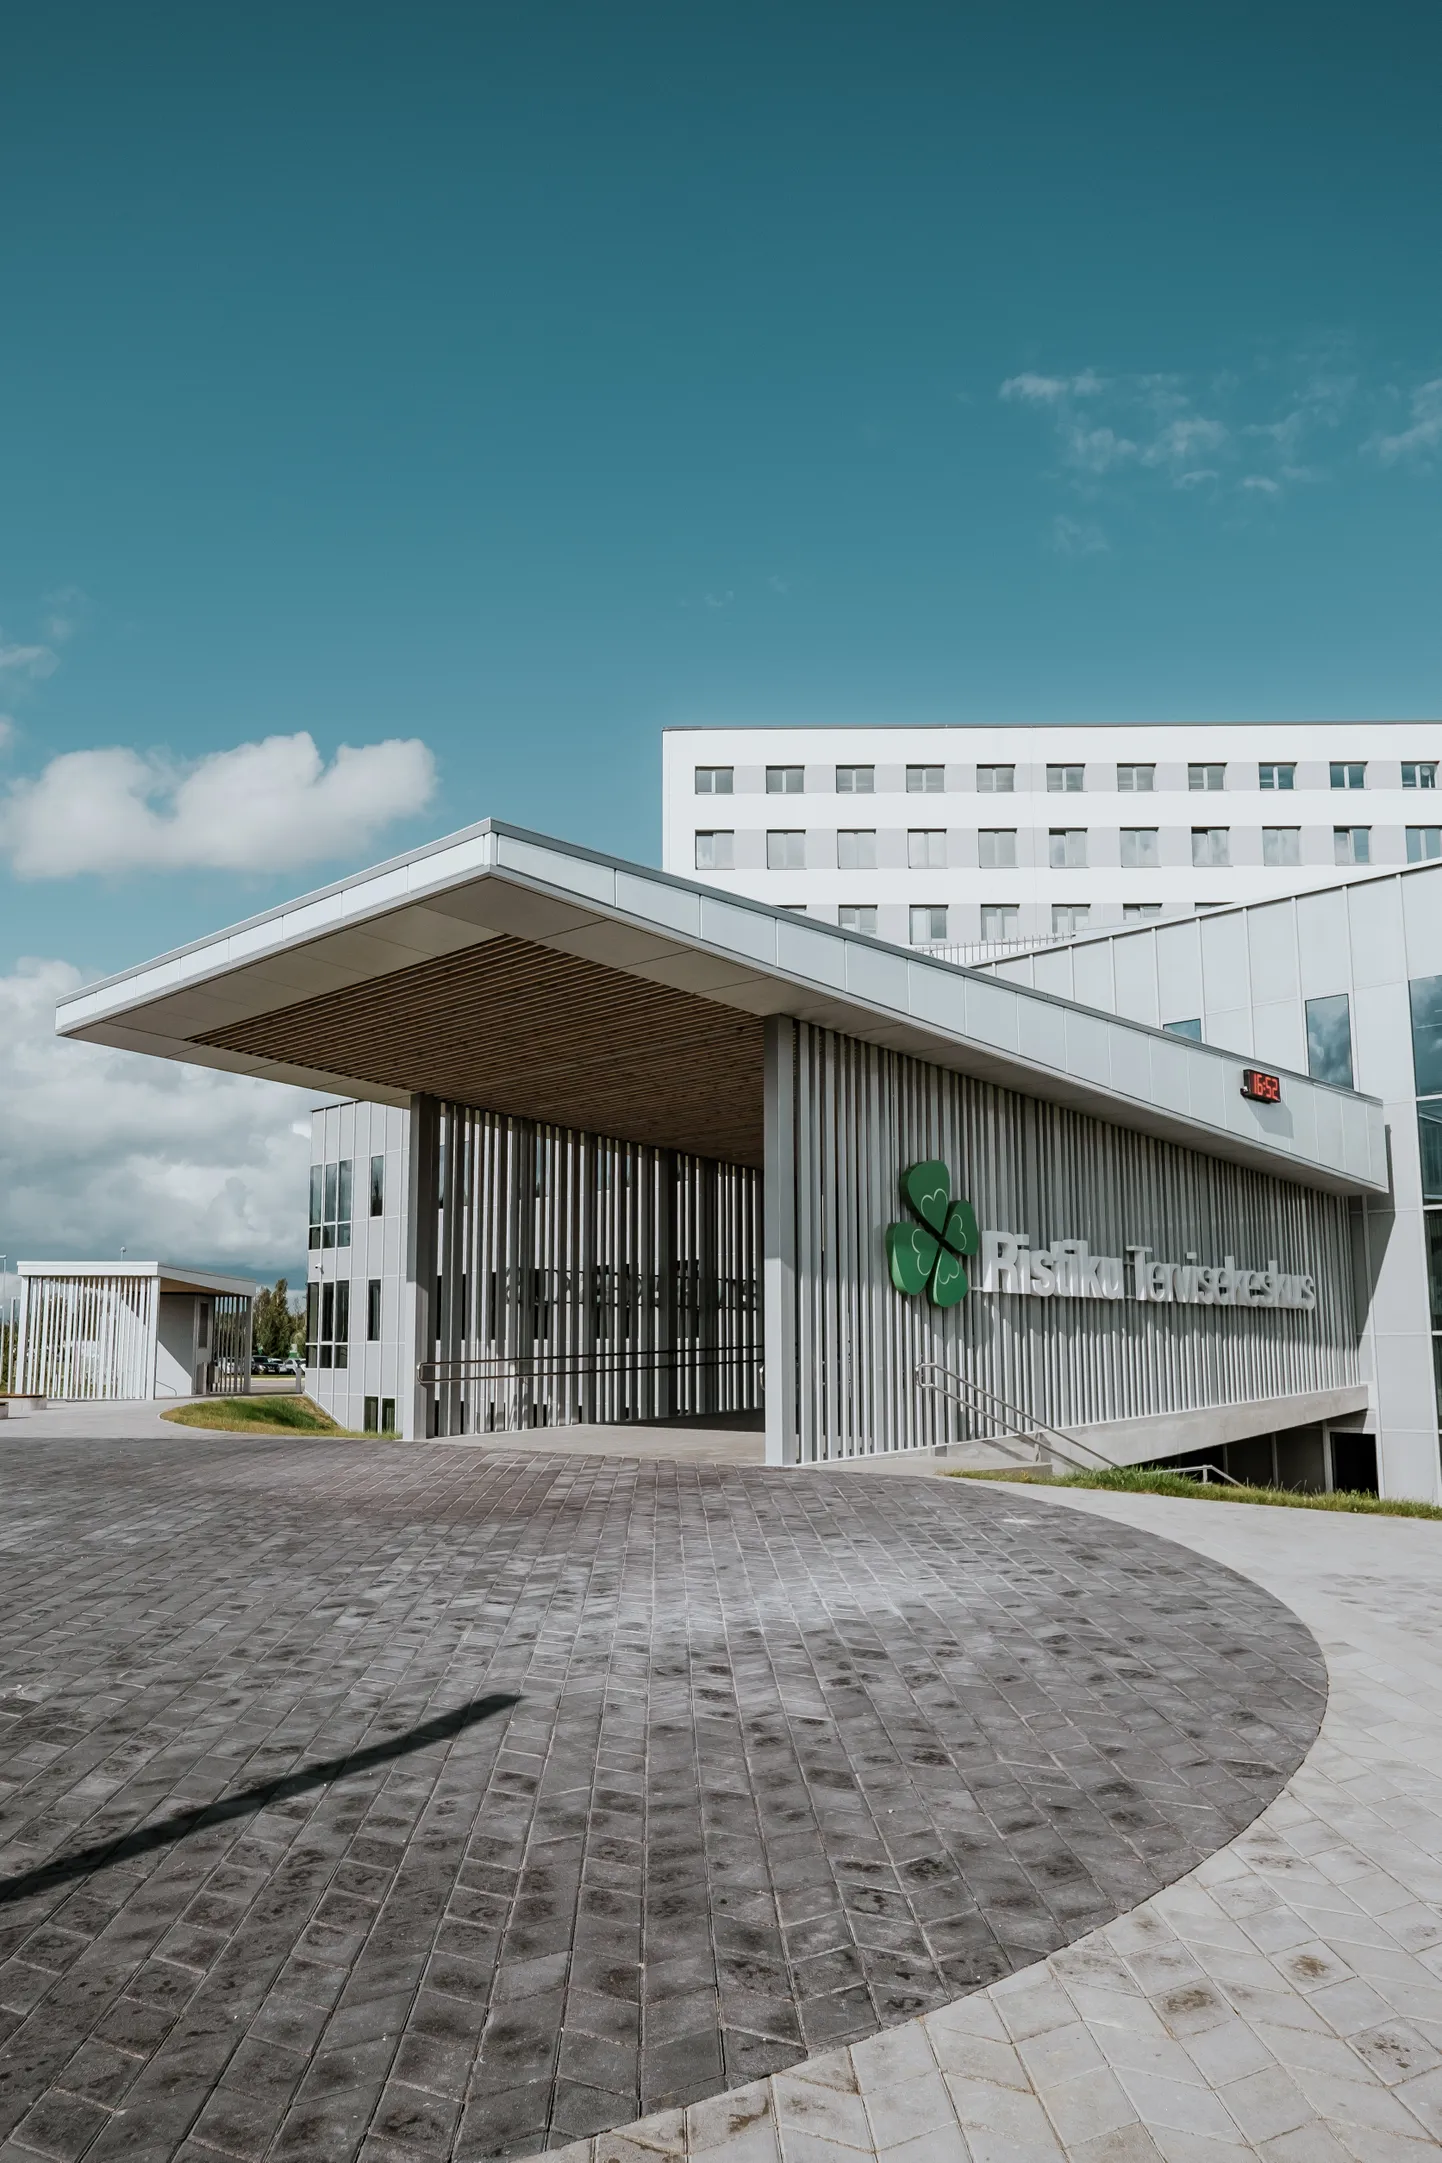 Väljast paistab juba mõnda aega, et Ristiku tervisekeskus on valmis. Pärnu haigla juht Urmas Sule kinnitas, et see ei jää tühjana seisma: läbirääkimised perearstidega juba käivad.